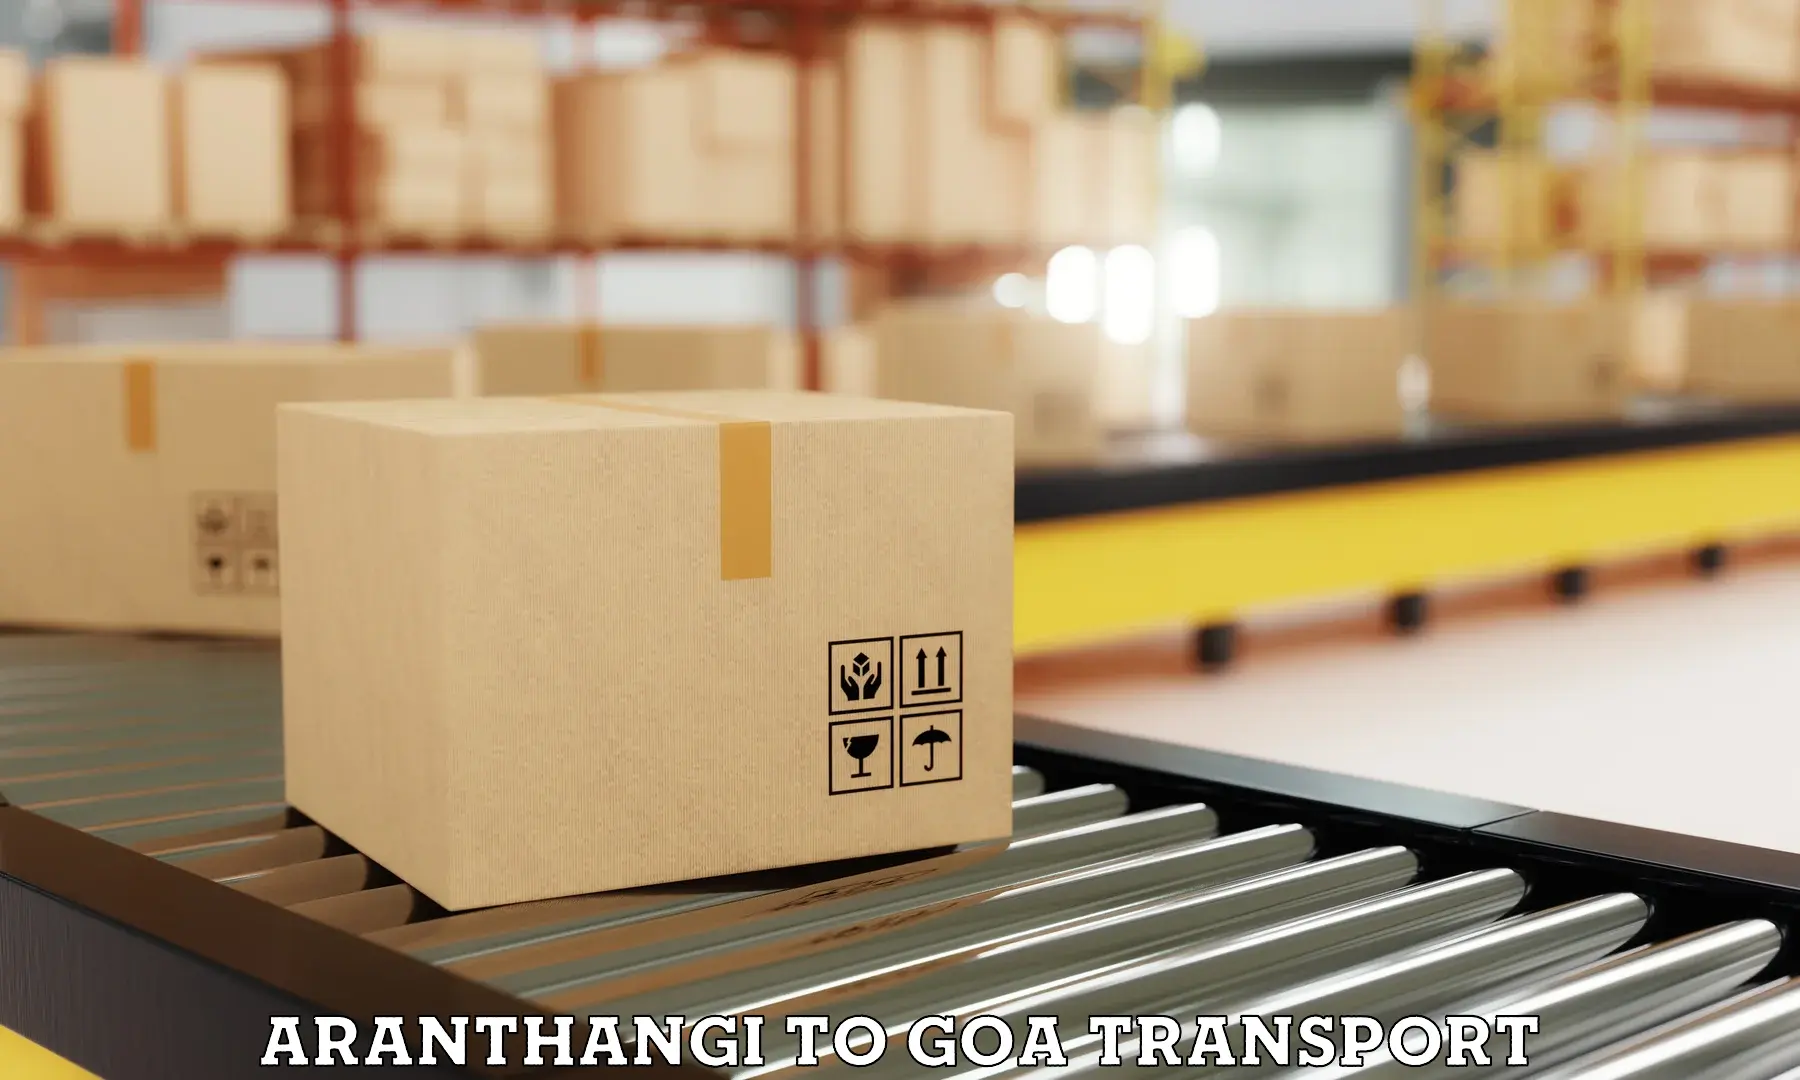 Shipping partner Aranthangi to NIT Goa